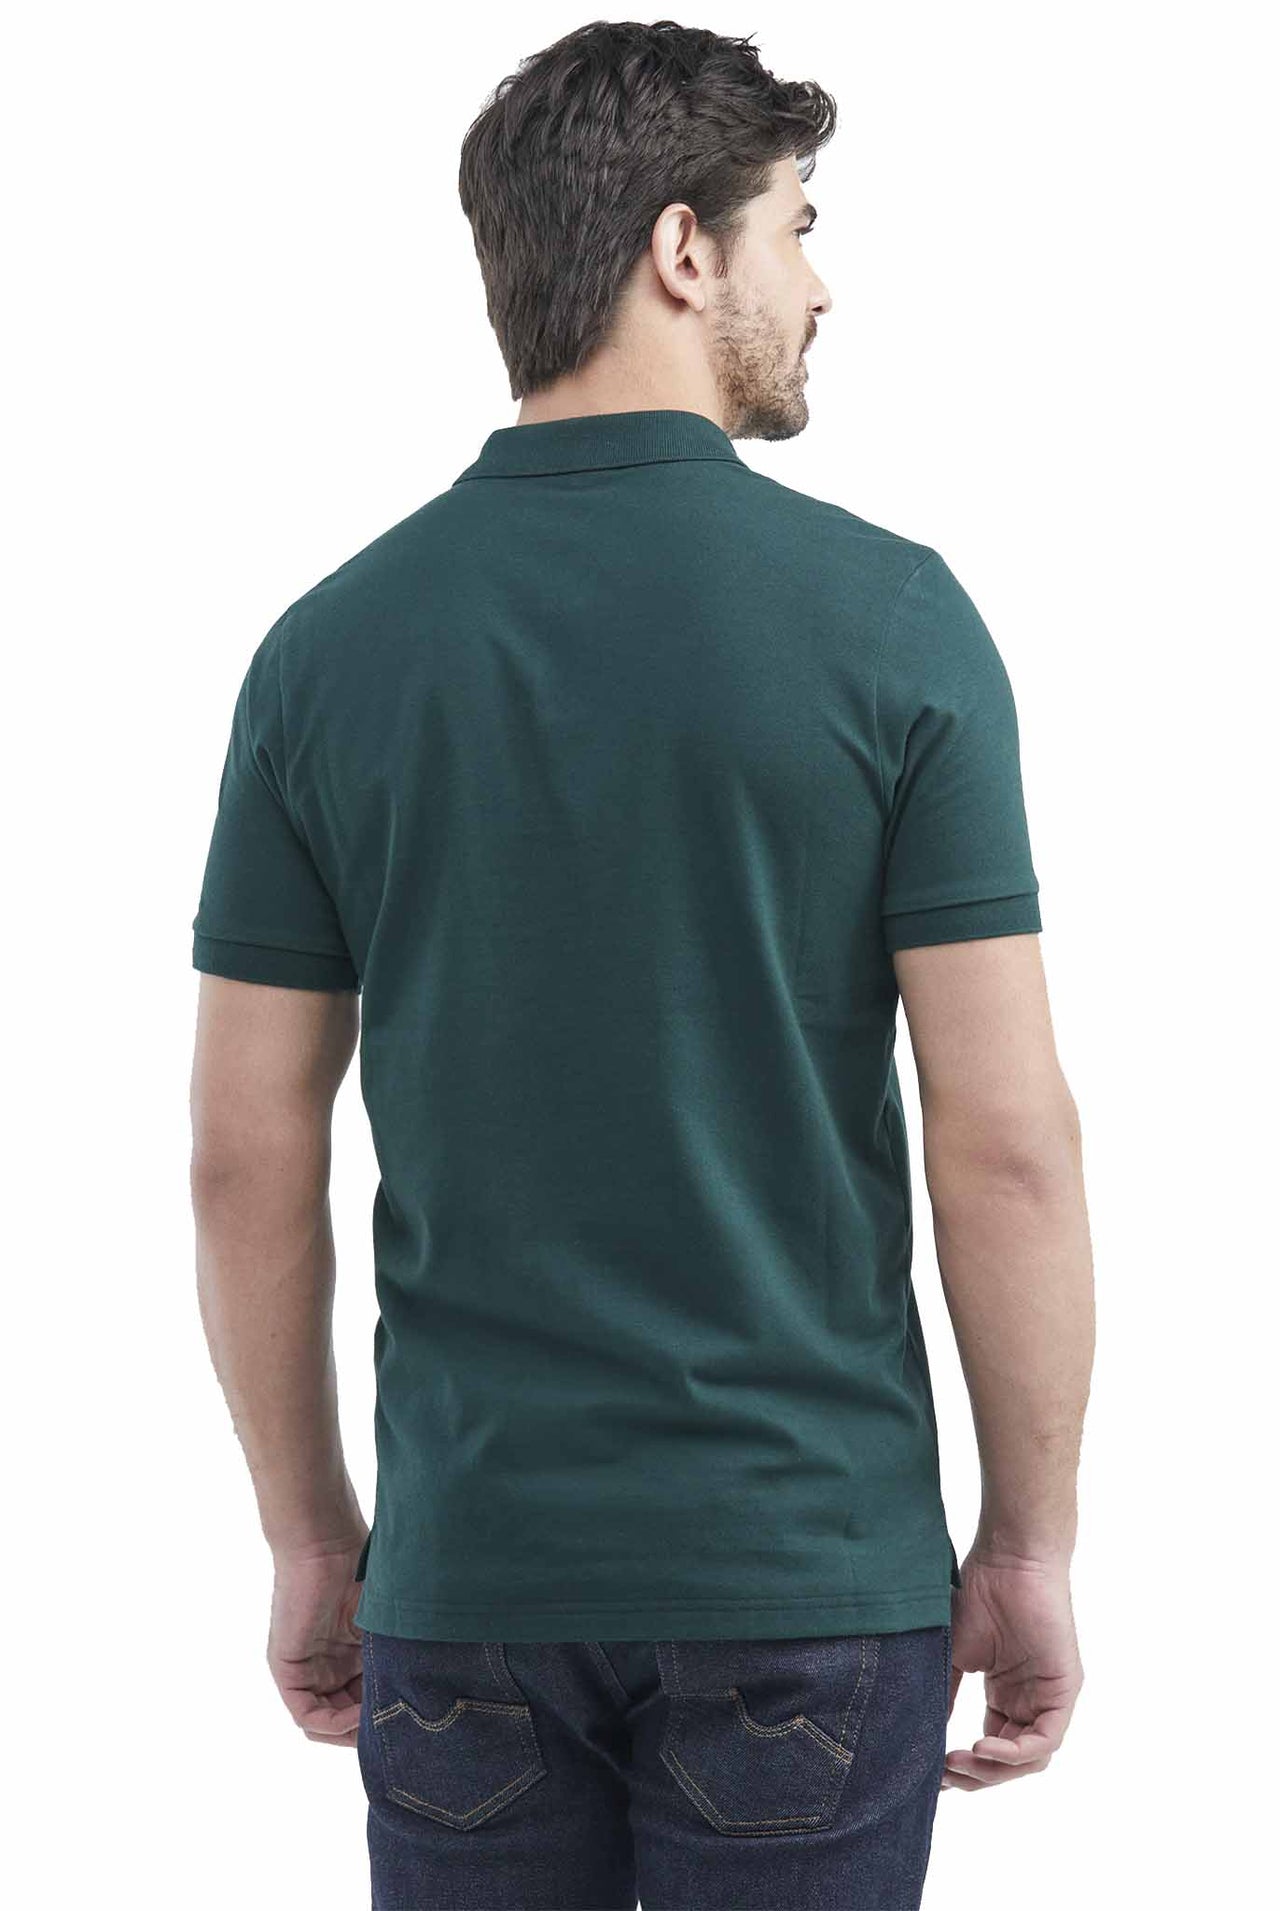 Camiseta Tipo Polo Chevignon Tono A Tono Manga Corta Verde Oscuro 609E001-301